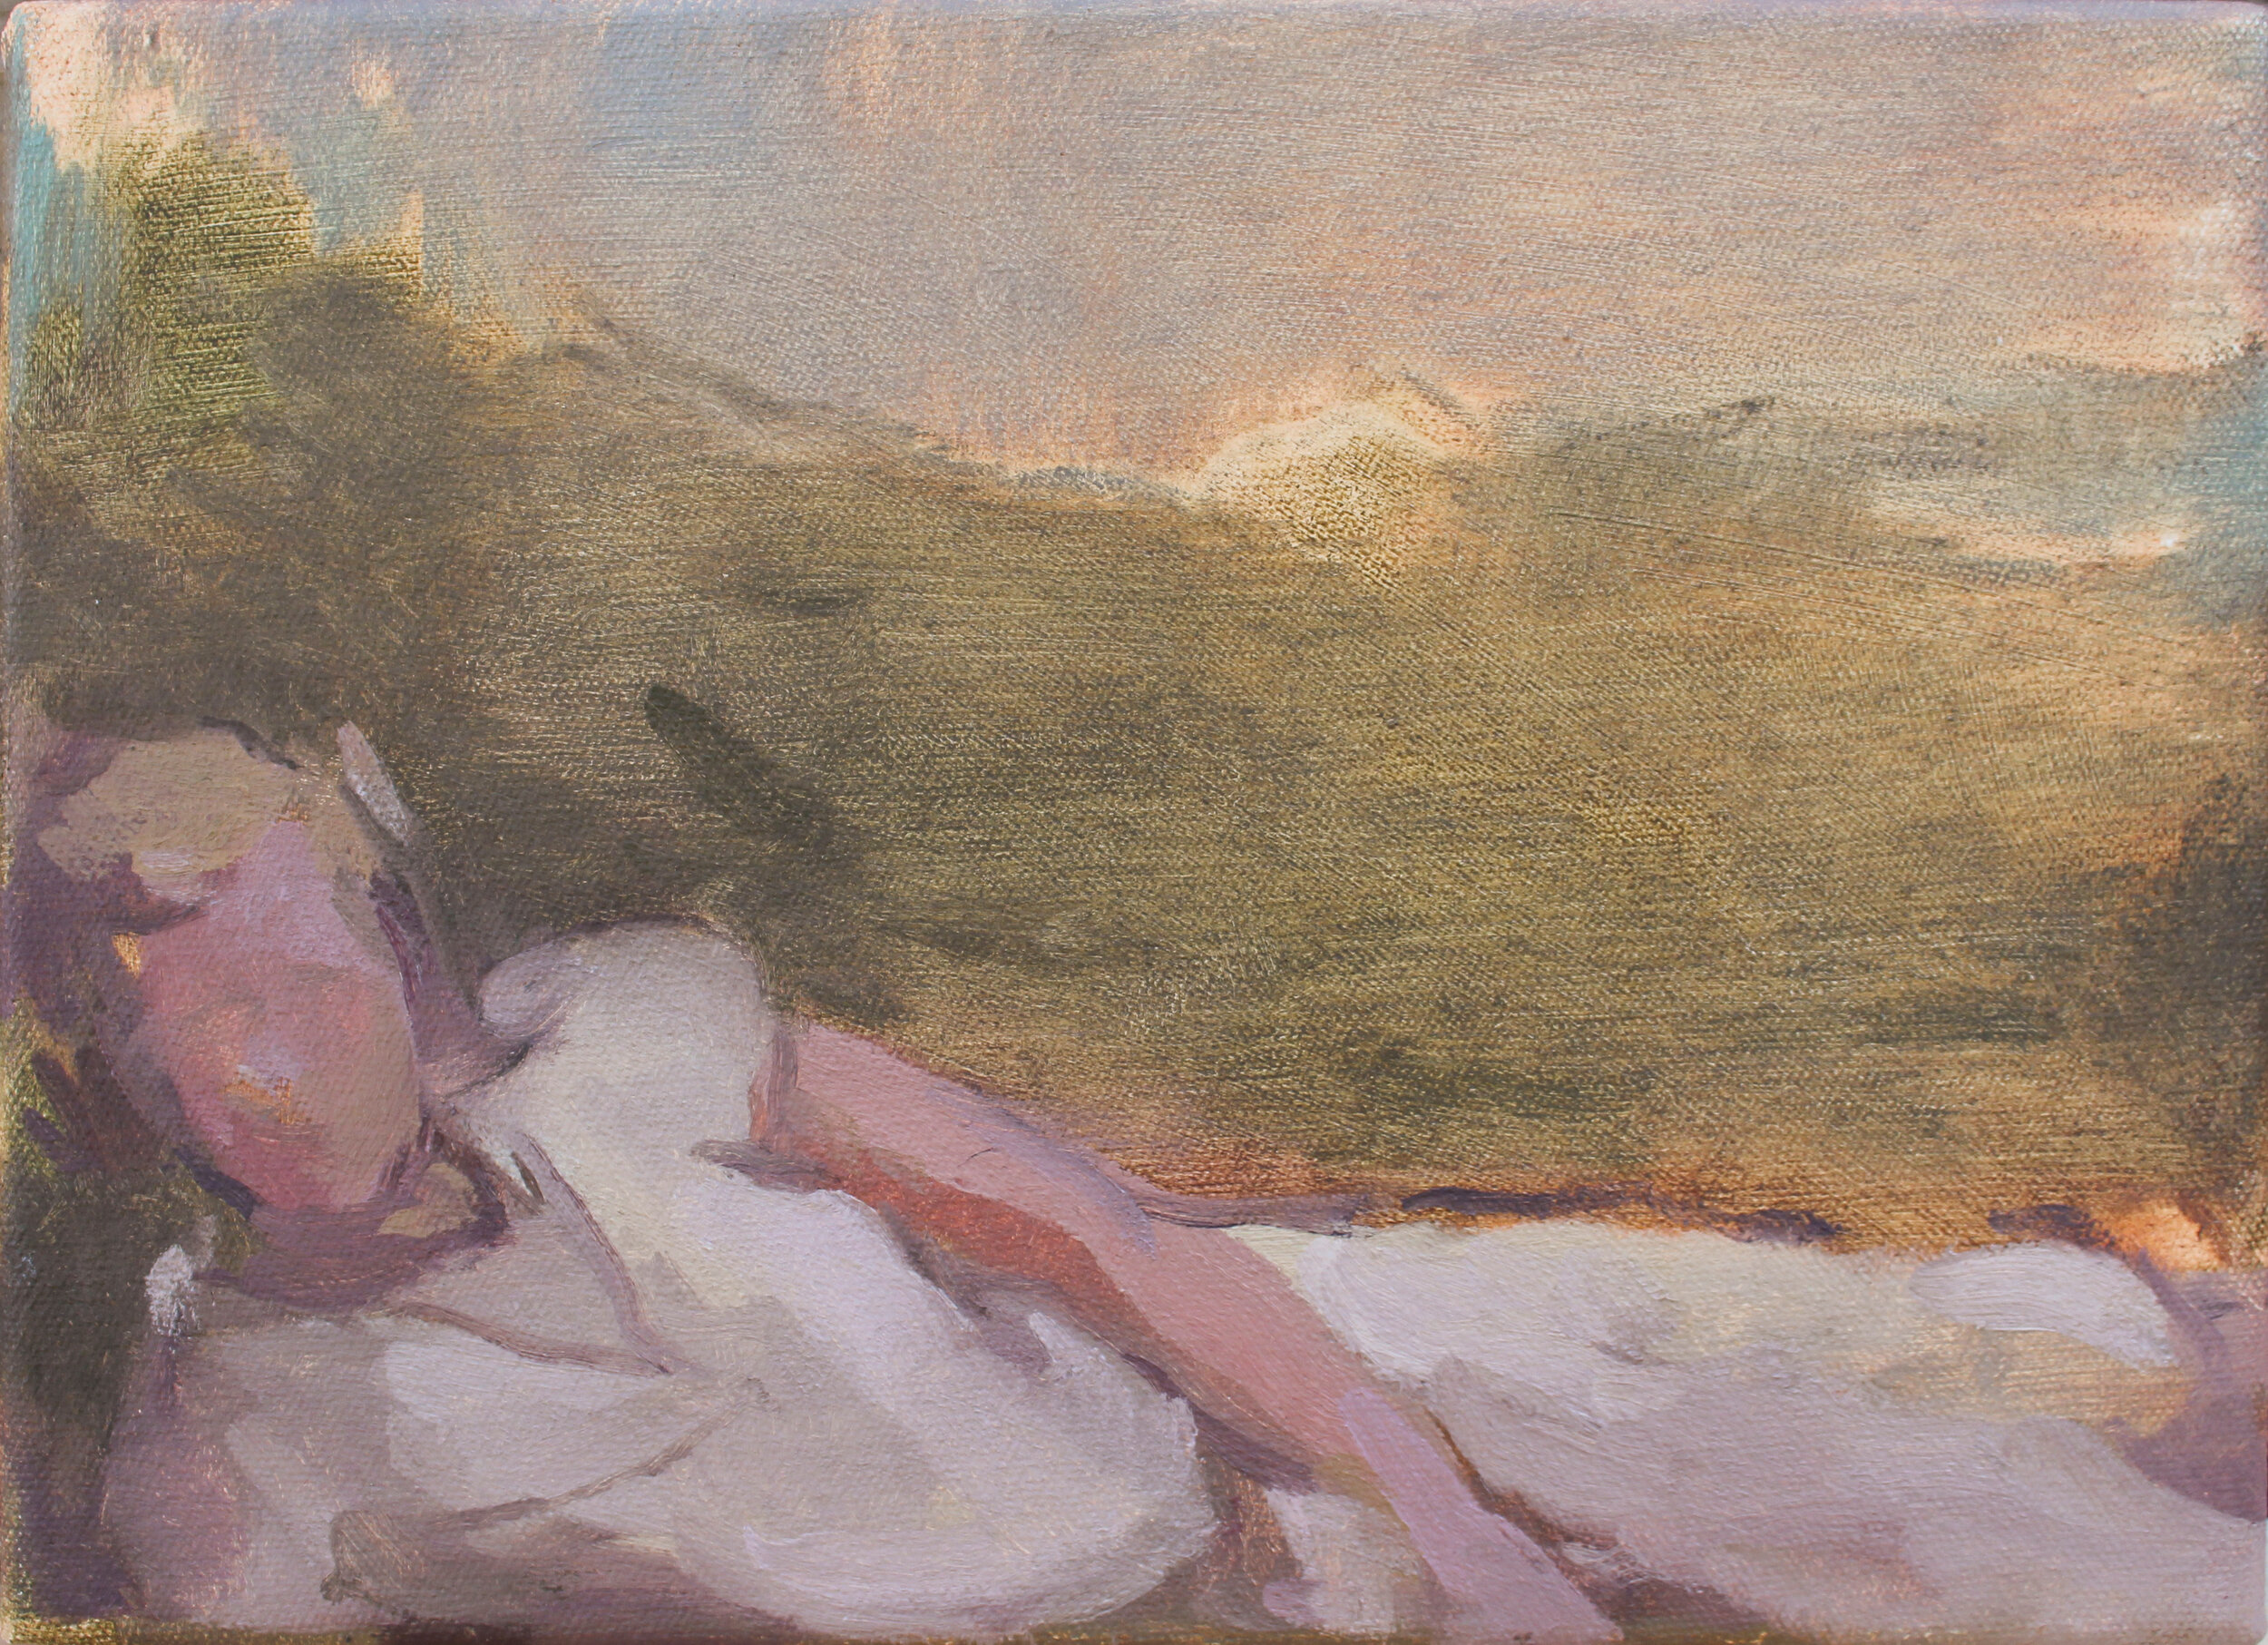    Cecilia in a Field     oil on canvas 8x11" 2015   purchase  